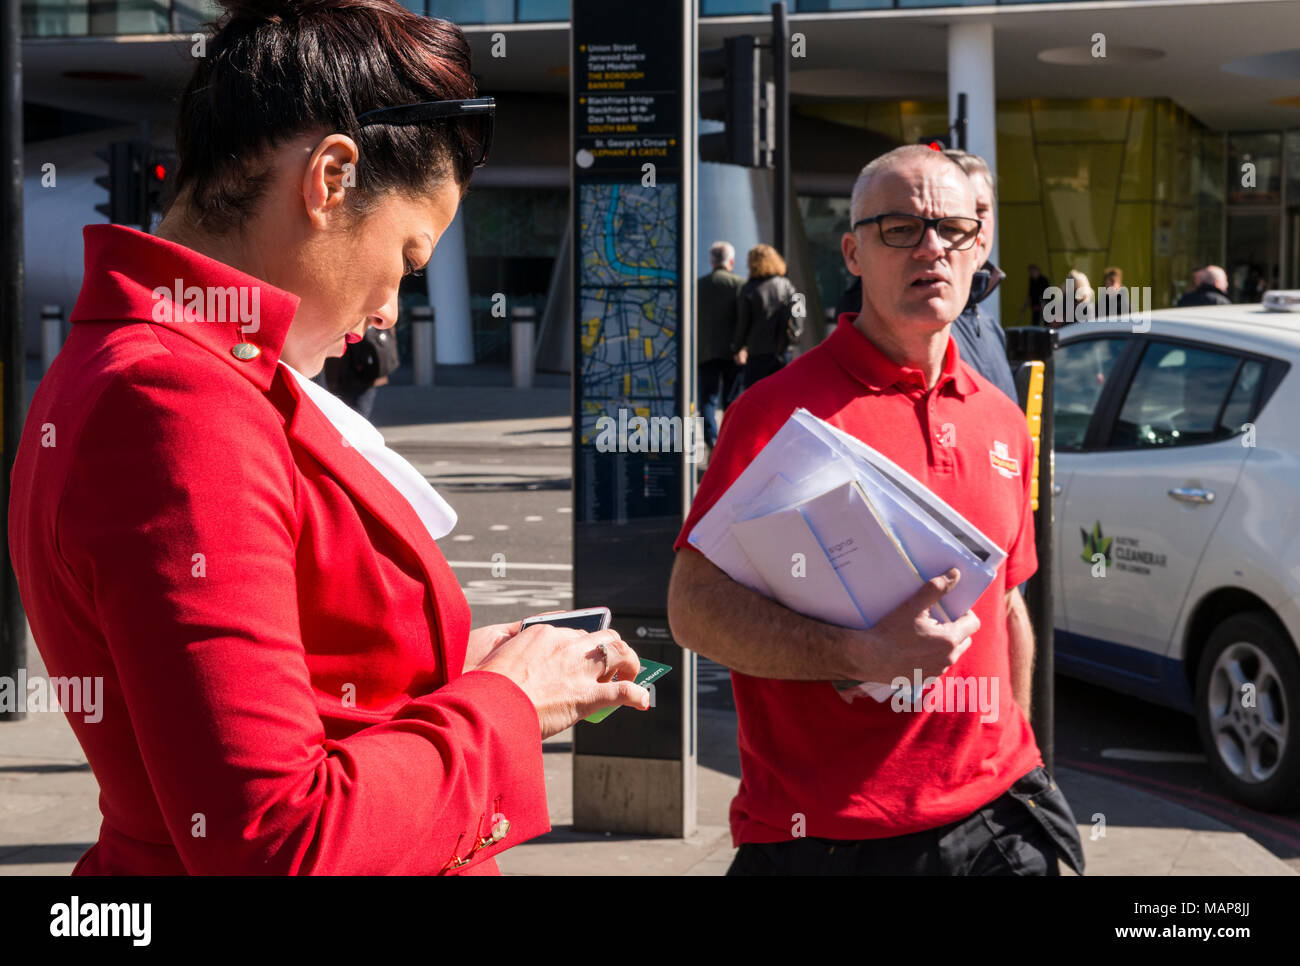 Mann und Frau sowohl in Rot als auf der Straße, London, England, Großbritannien Stockfoto